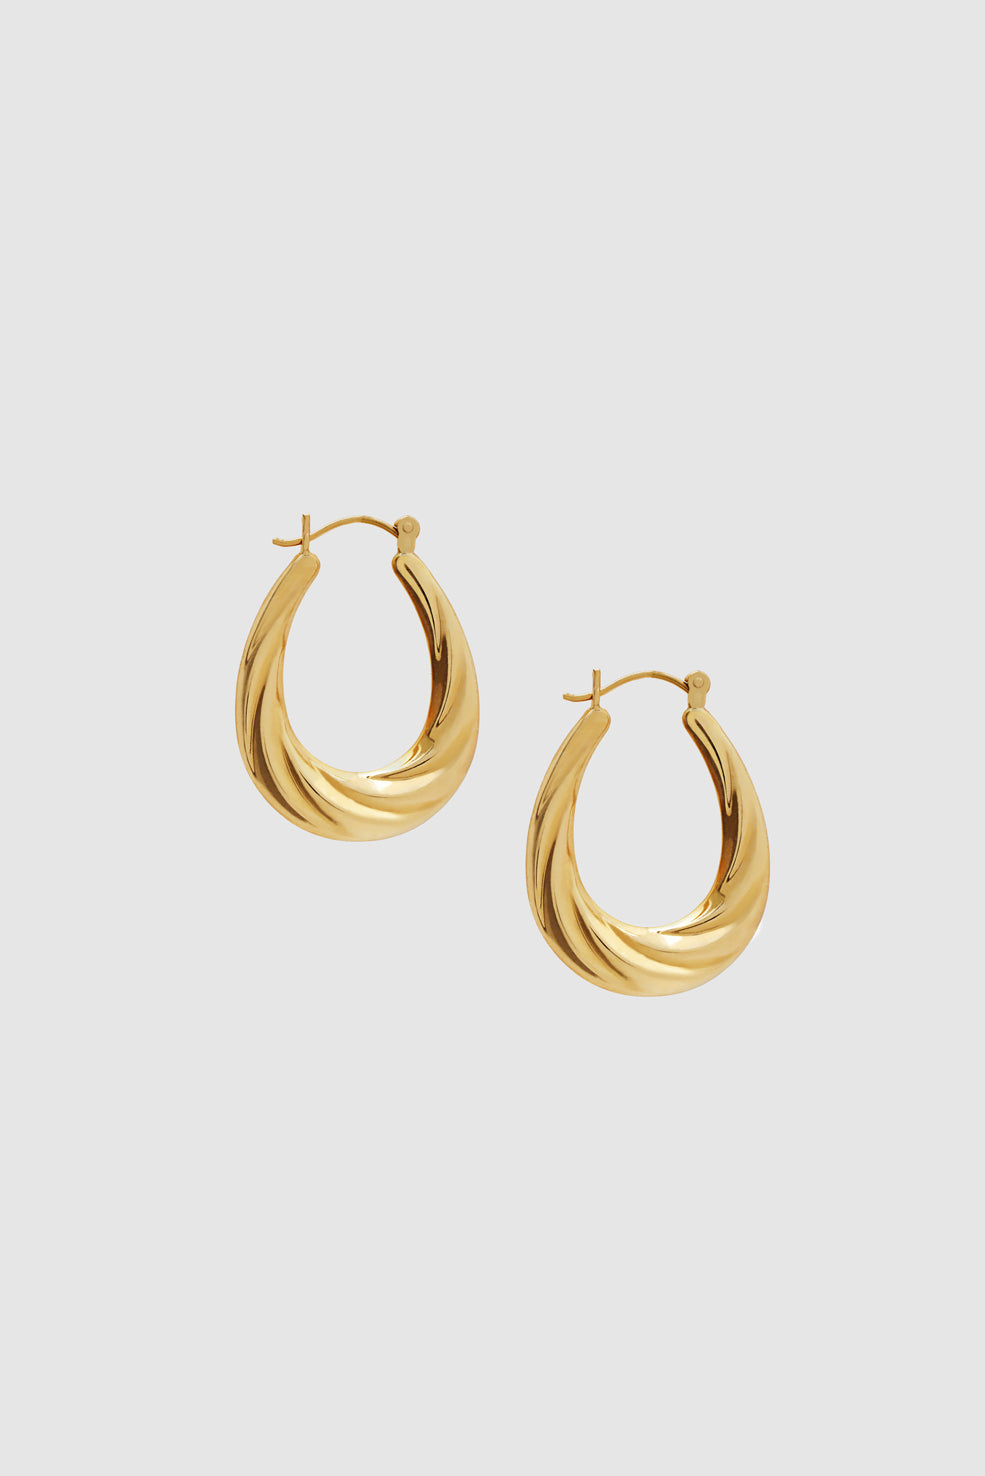 ANINE BING Oval Twist Hoop Earrings - 14k Gold - Front View